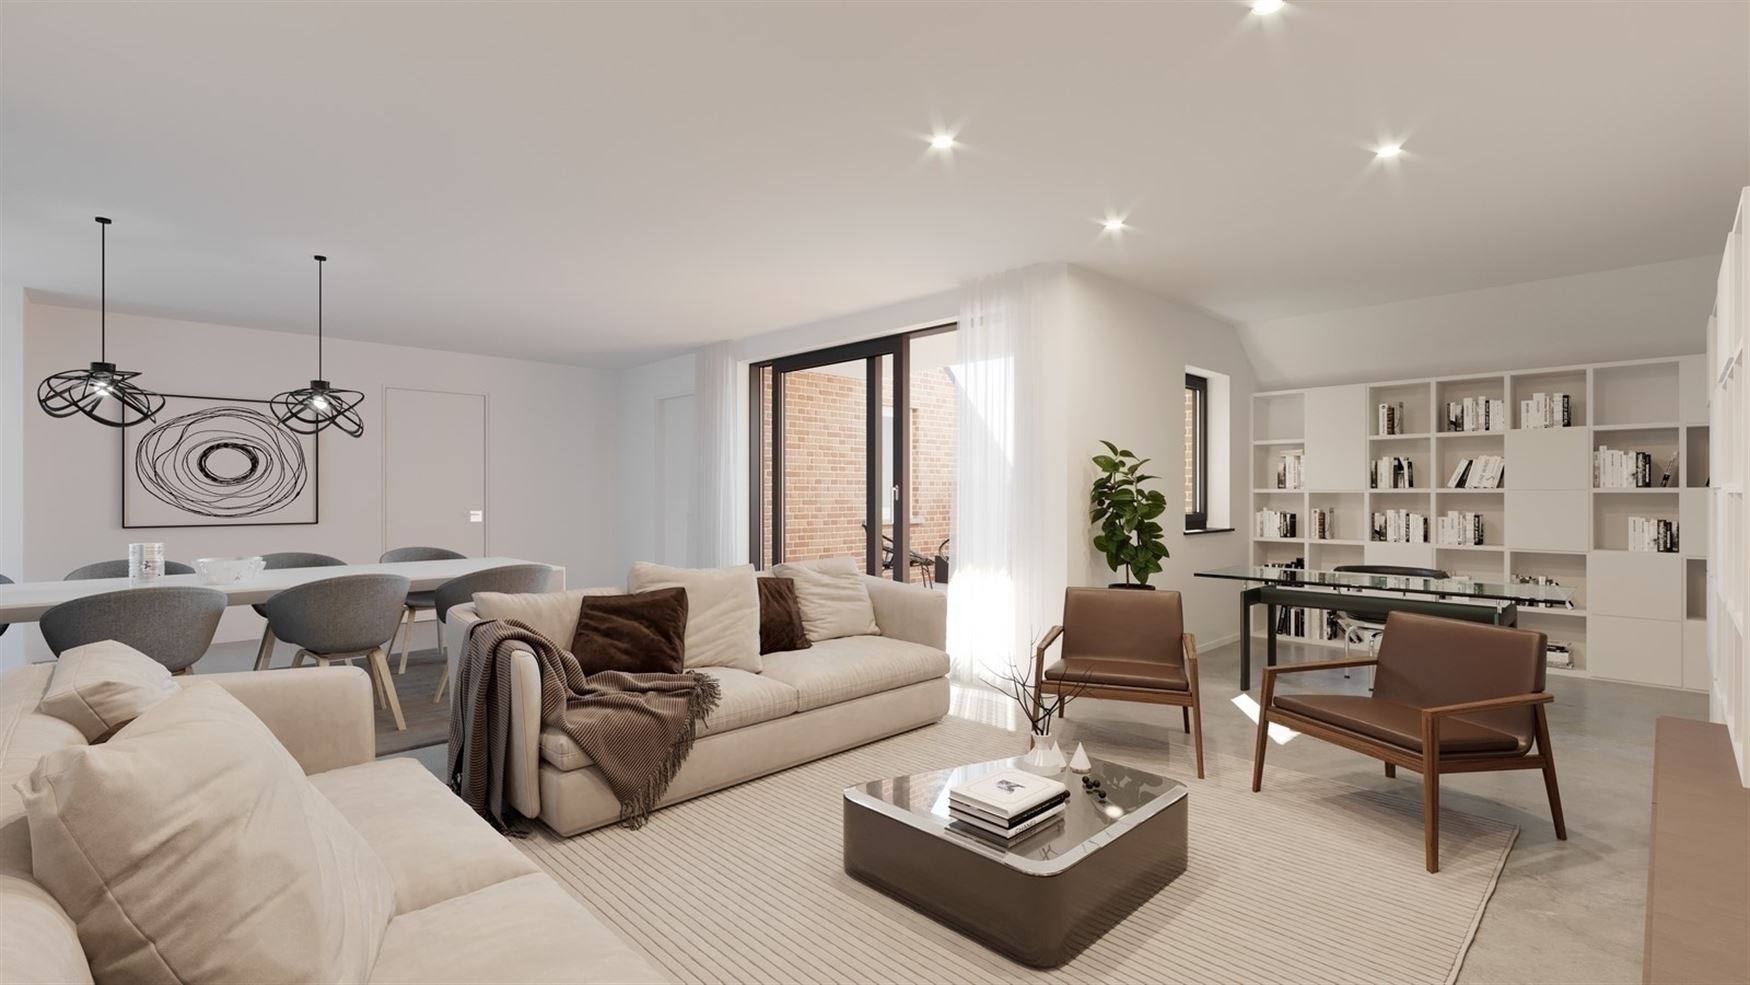 <p>Appartement 113A (108 m²) bevindt zich op het gelijkvloers, heeft 2 slaapkamers en een tuin + terras van 61 m². Mogelijkheid tot aankoop ...